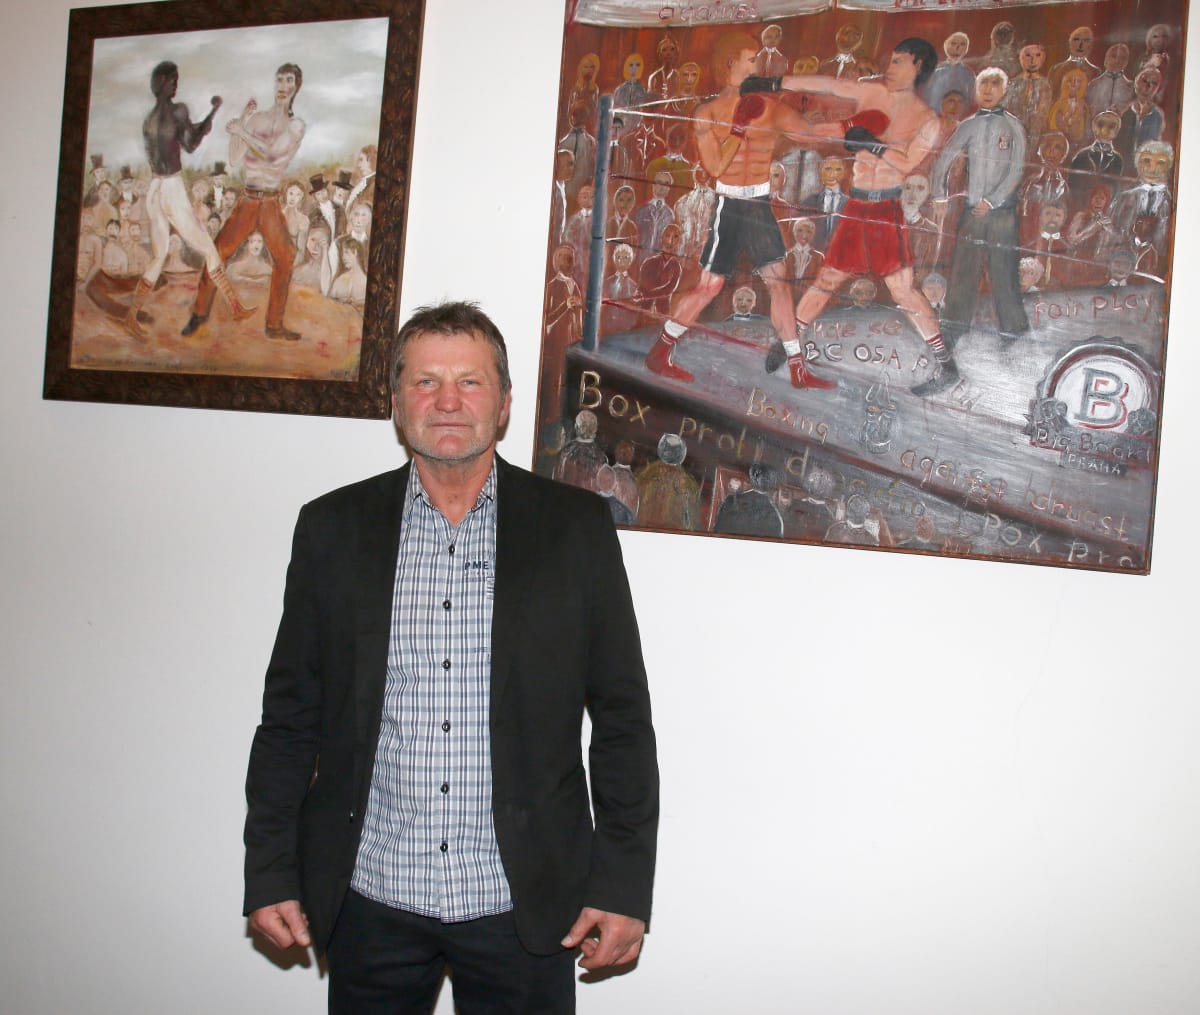 Bývalý boxer Rostislav Osička je velkým fanouškem Muhammada Aliho. A stejně jako on má i jiné zájmy než sport - třeba umění.